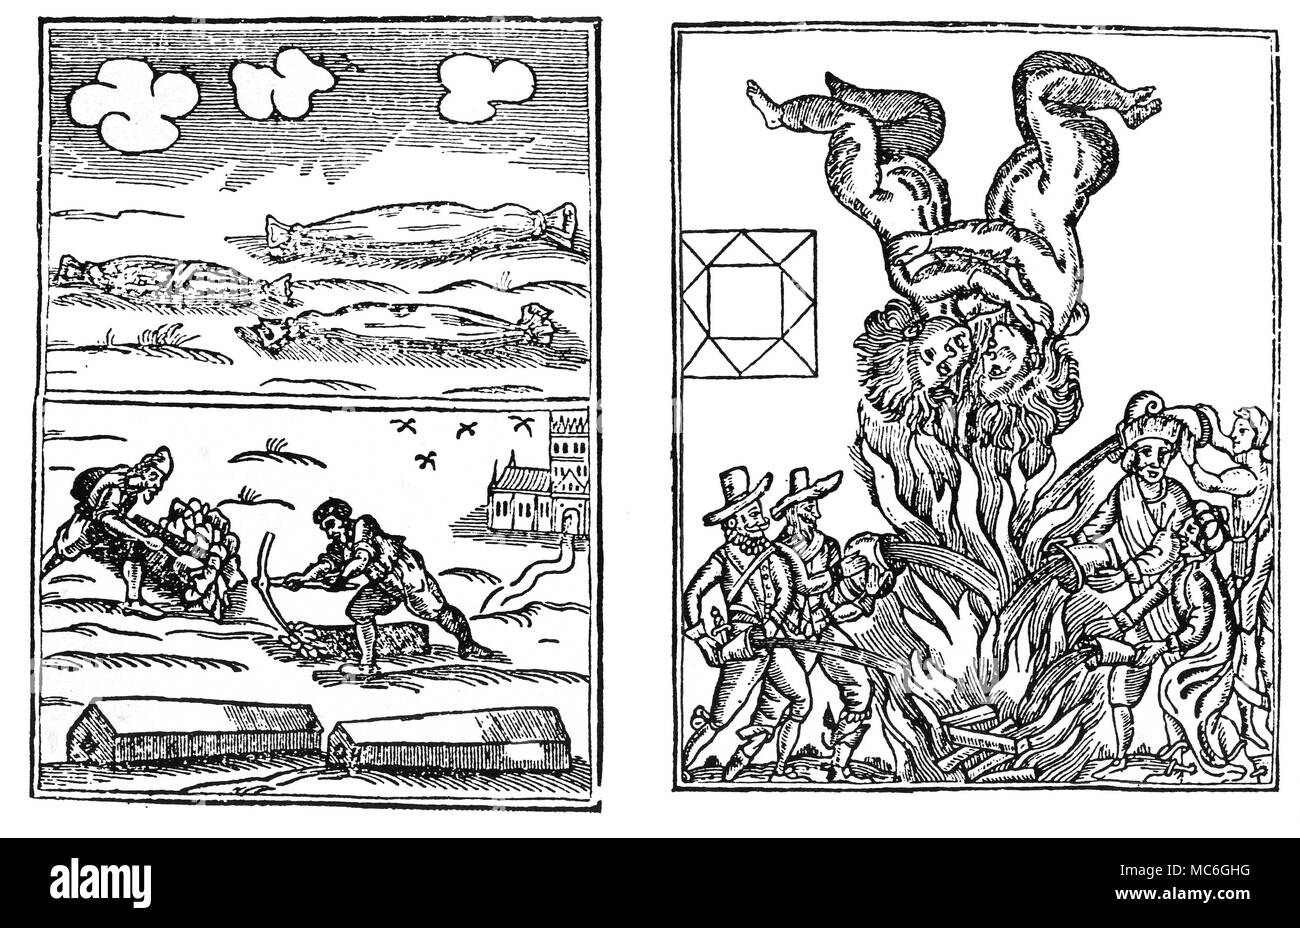 Astrologie - Hieroglyphen zwei "Hieroglyphen", oder aenigmatic Platten, von der englischen Astrologin veröffentlicht, William Lilly, circa 1651. Das Bild auf der linken Seite wurde als eine Vorhersage der großen Pest von 1665 berücksichtigt. Das Bild auf der rechten Seite, wie eine Voraussage über den großen Brand, der viel von London im Jahre 1666 zerstört wurde. Die Verbindung mit London ist klar in astrologischen Begriffen, für die Zwillinge schwebt über dem Feuer Gemini - die Sternzeichen, dass London Regeln dar. Von Richard A. Proctor, Mythen und Wunder der Astronomie, 1889. Stockfoto